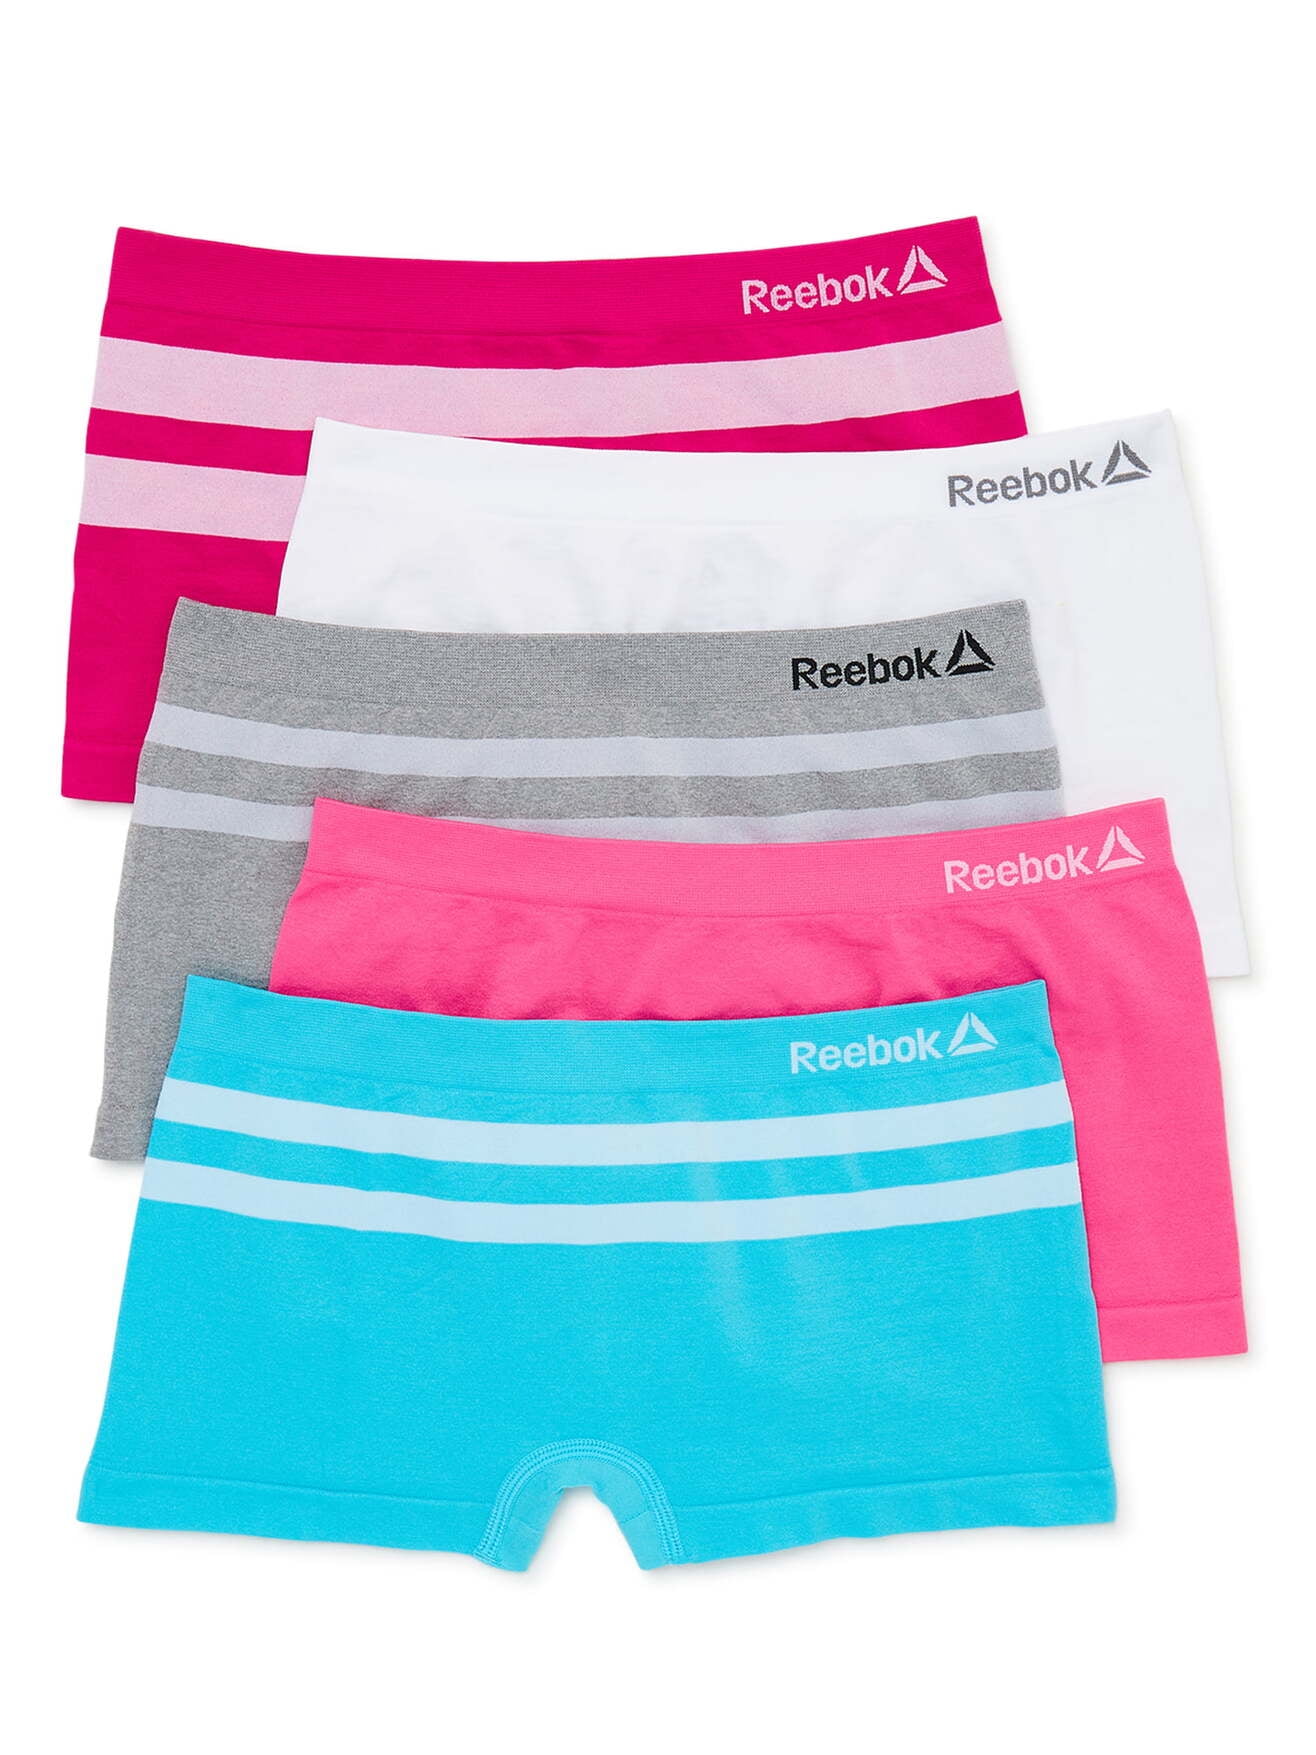 Reebok Girls Seamless Boyshort Panties, 5-Pack 